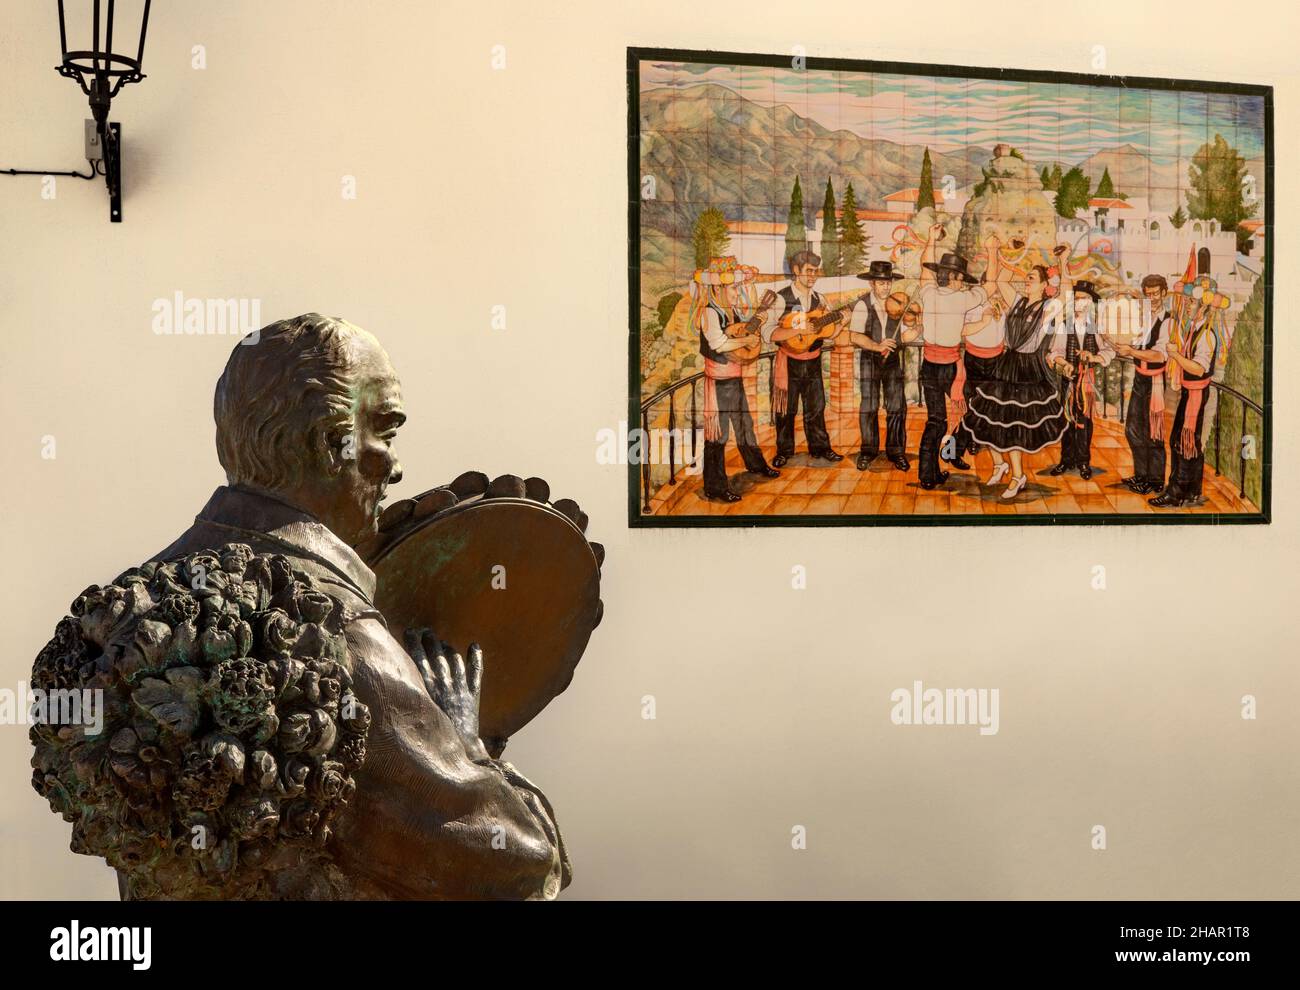 La escultura Al Fiesterero dedicada a las fiestas y un panel de cerámica cercano que relata la historia del pueblo de Comares, un pueblo de 703 metros de altura Foto de stock